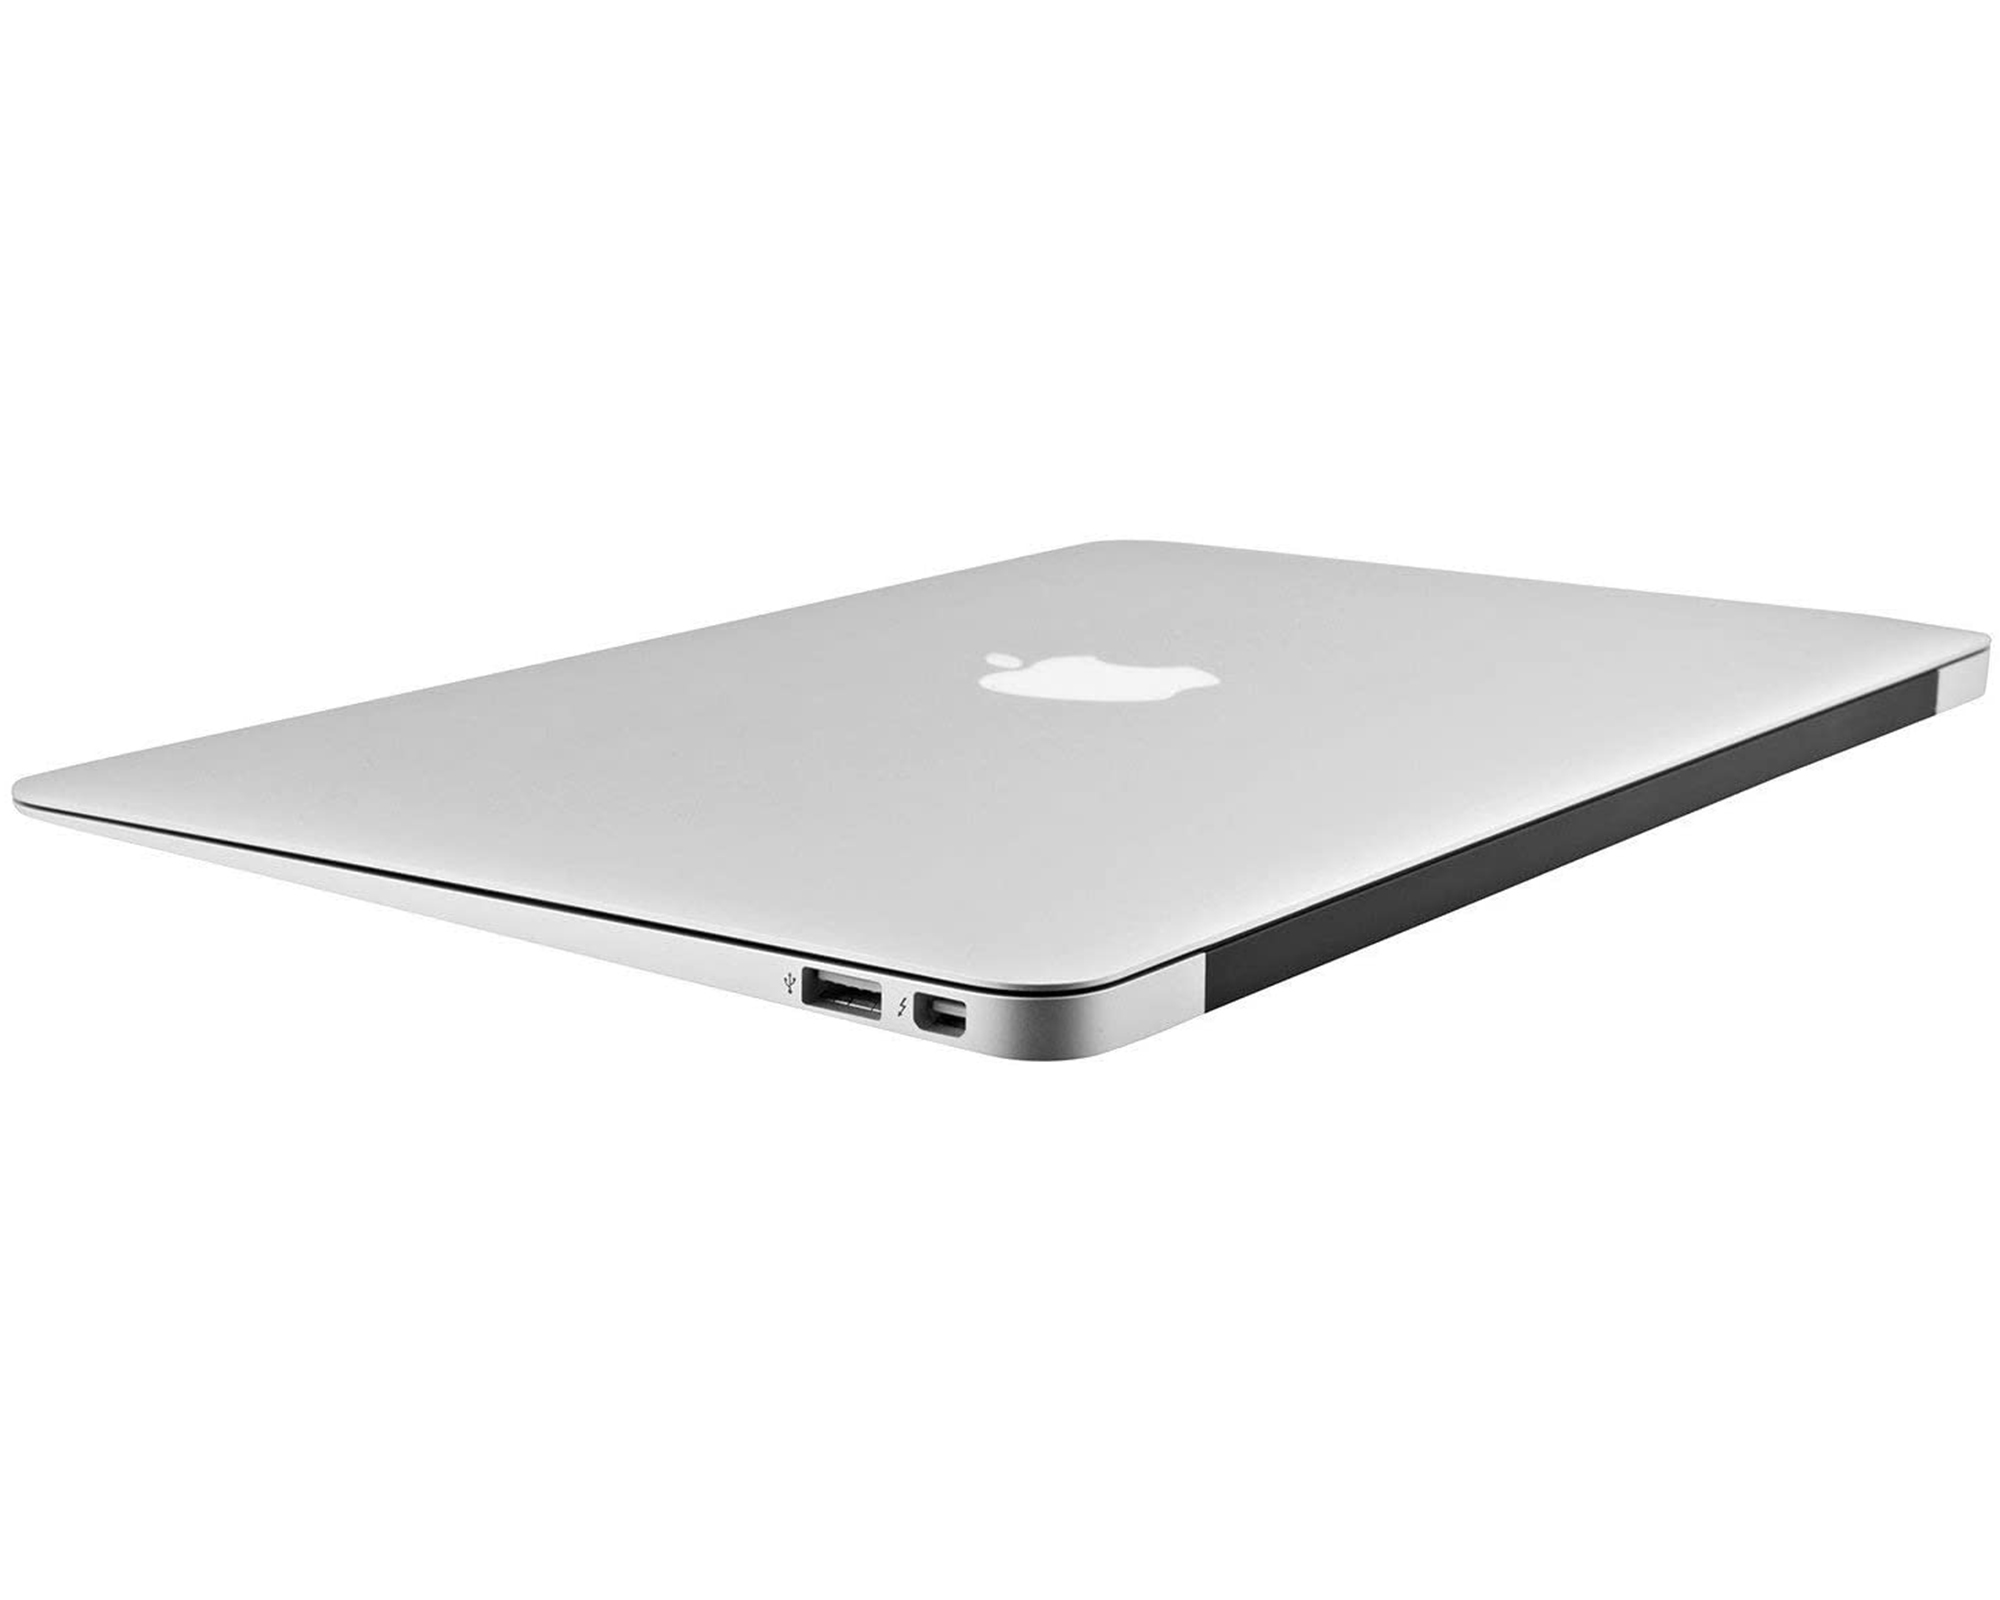 Restored Apple MacBook Air MJVE2LL/A Intel Core i5-5250U X2 1.6GHz 4GB 128GB SSD Silver (Refurbished) - image 3 of 7